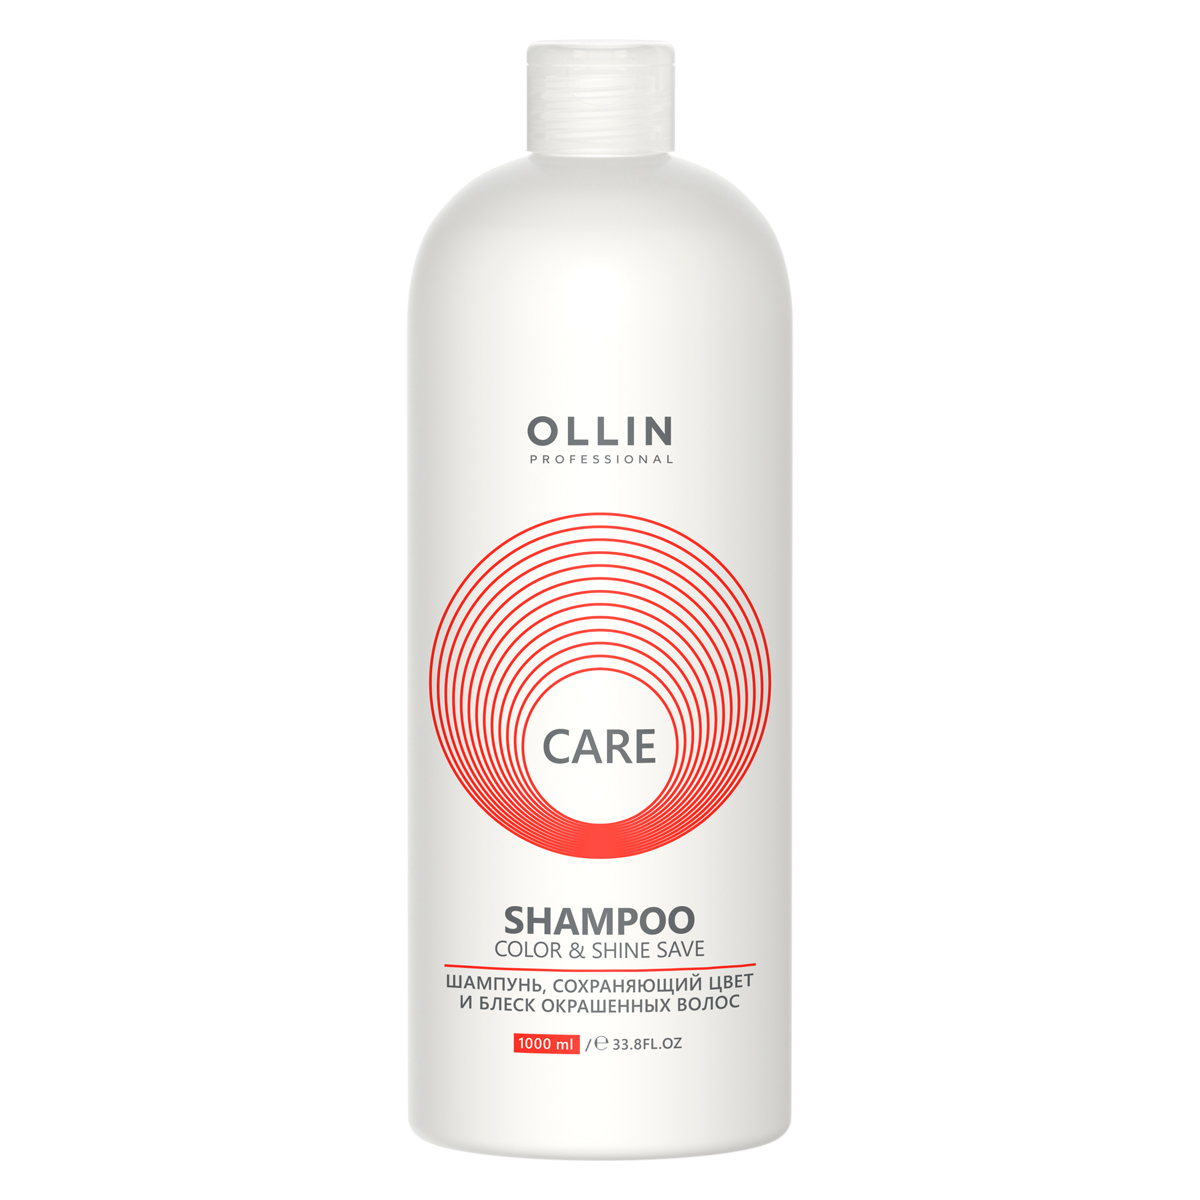 Ollin Professional Шампунь, сохраняющий цвет и блеск окрашенных волос, 1000 мл (Ollin Professional, Care) шампунь ollin professional care сохраняющий цвет и блеск окрашенных волос 1000 мл